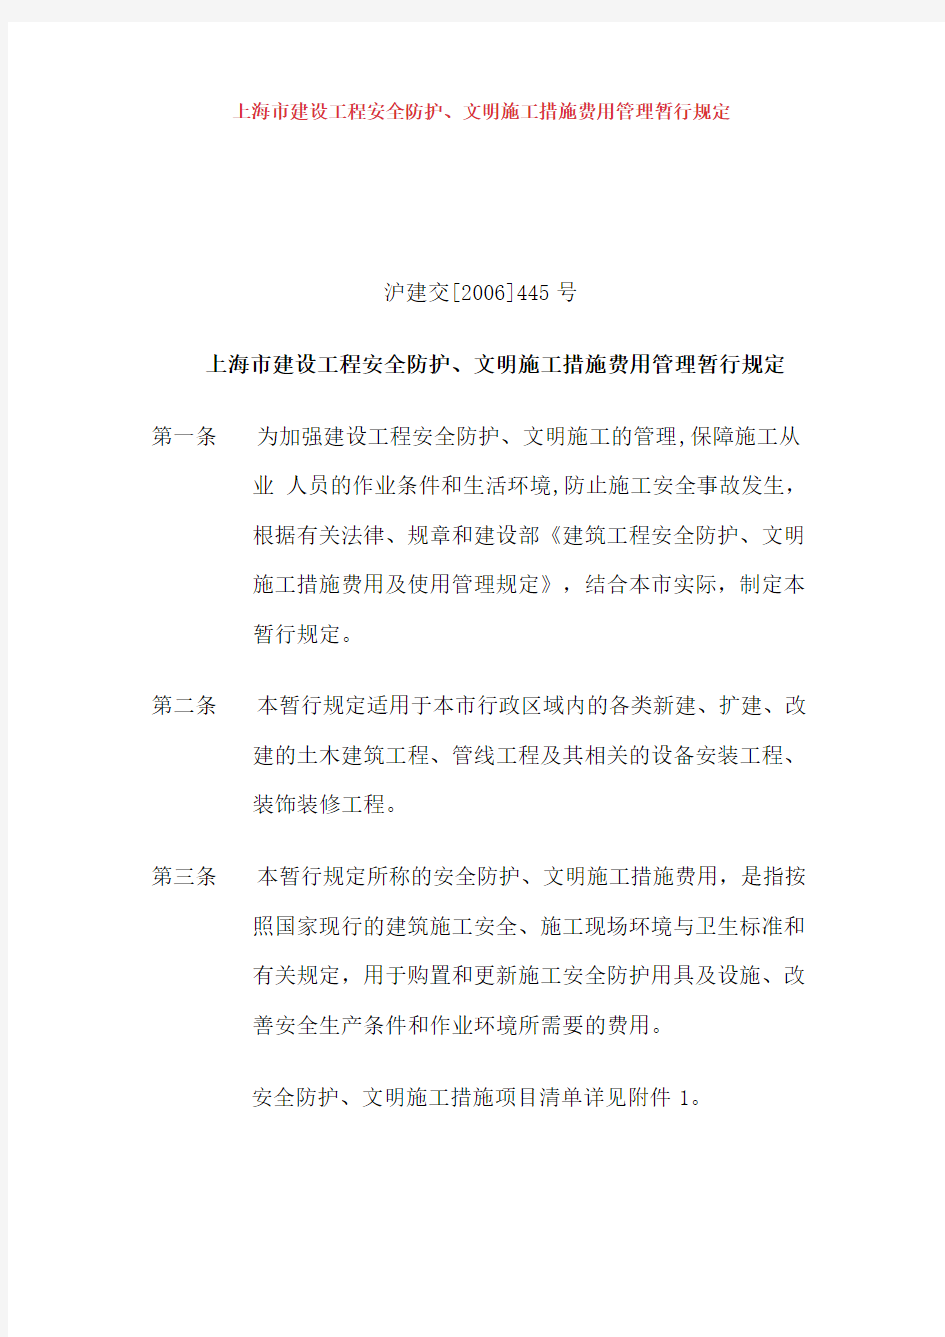 上海市建设工程安全防护文明施工措施费用管理暂行规定